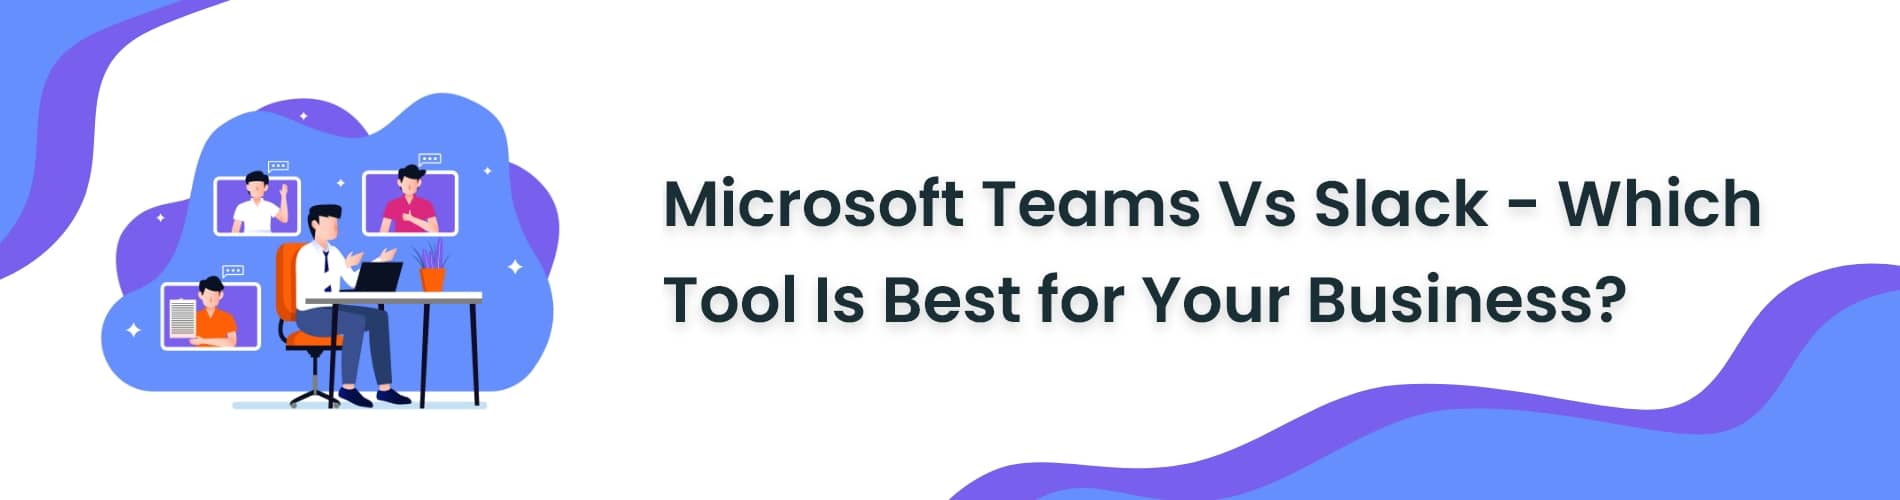 Microsoft Teams Vs Slack